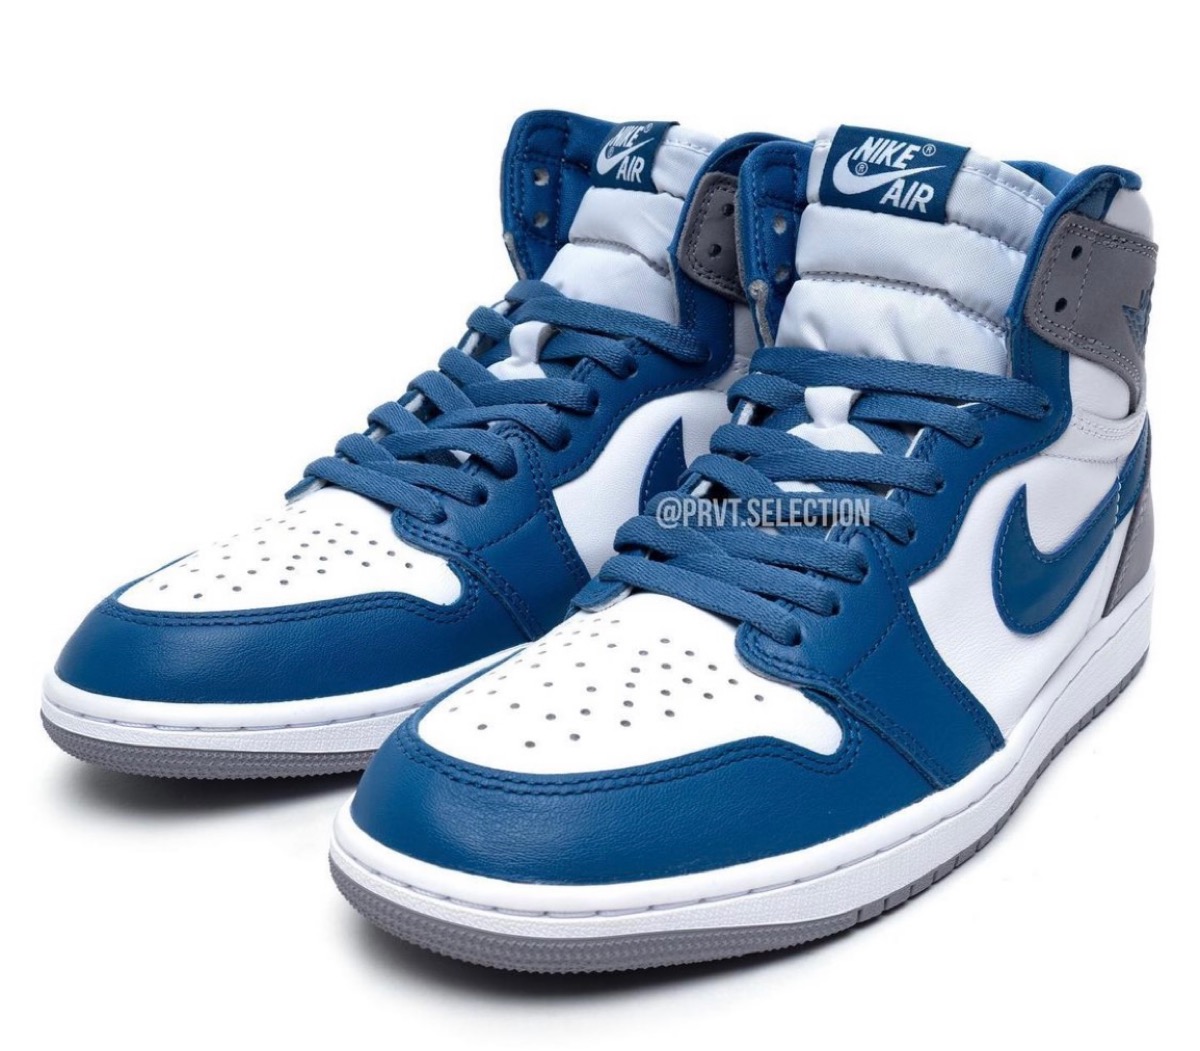 Nike Air Jordan 1 High OG "True Blue" 28